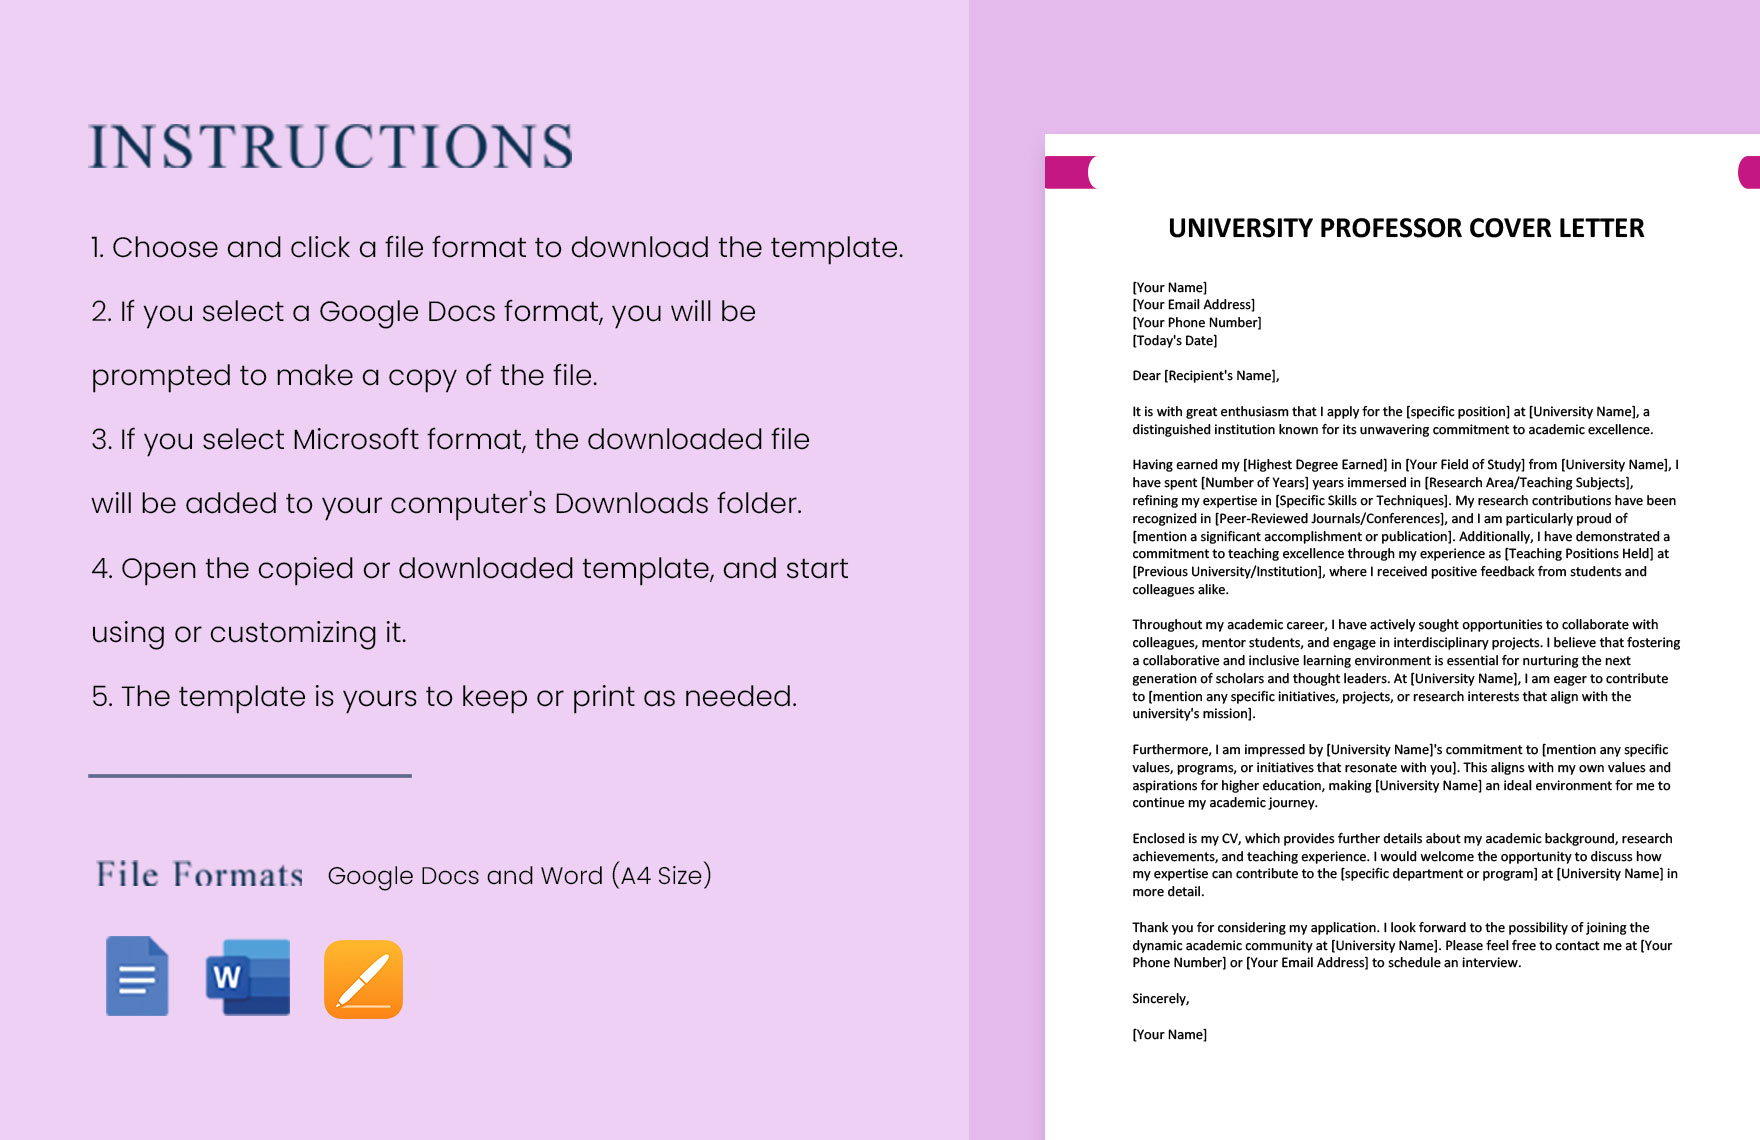 University Professor Cover Letter